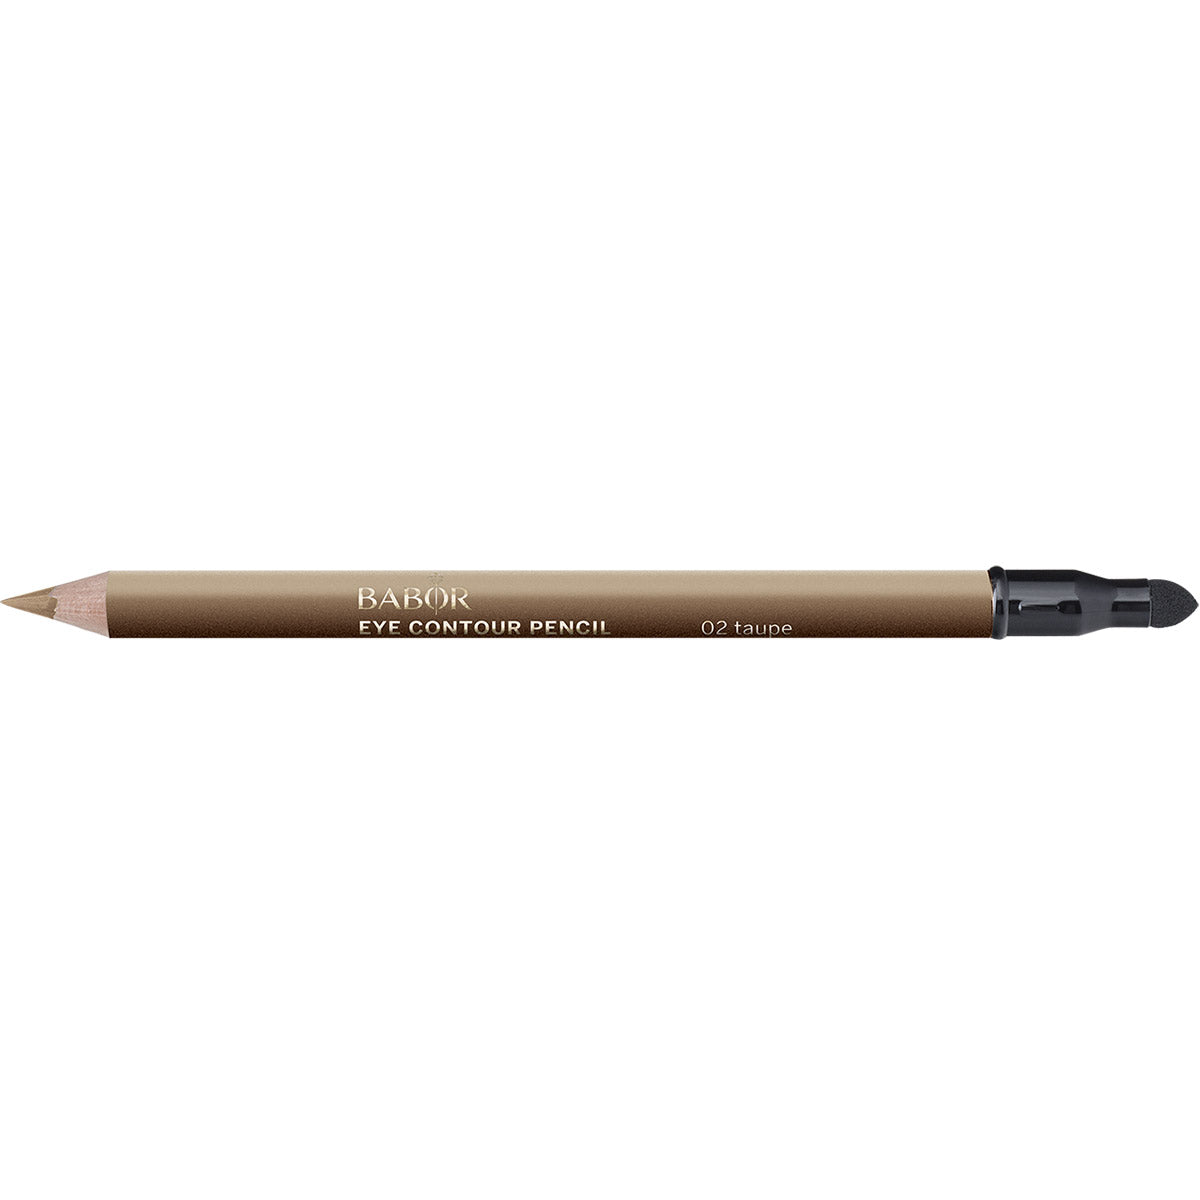 Babor, Eye Contour Pencil